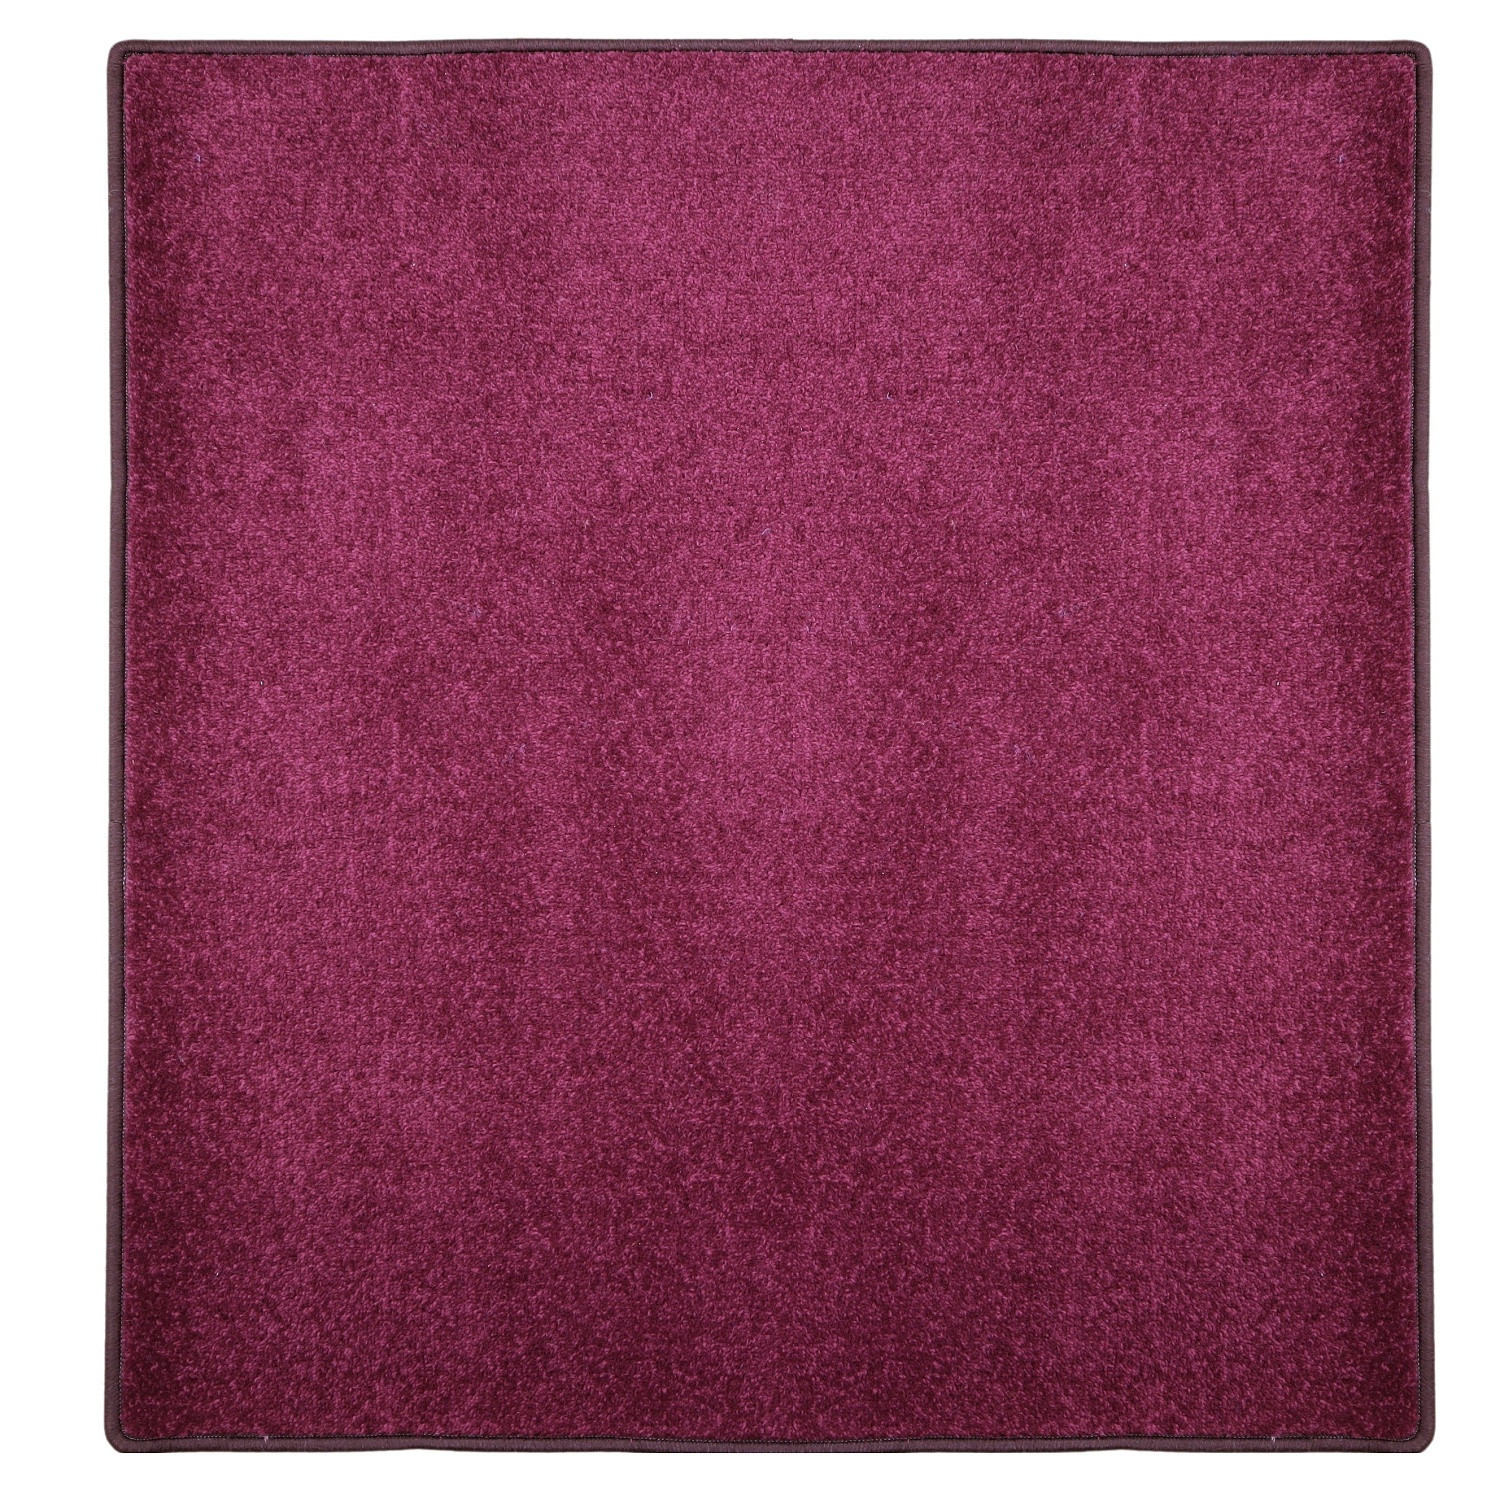 Kusový koberec Eton fialový 48 čtverec - 60x60 cm Betap koberce